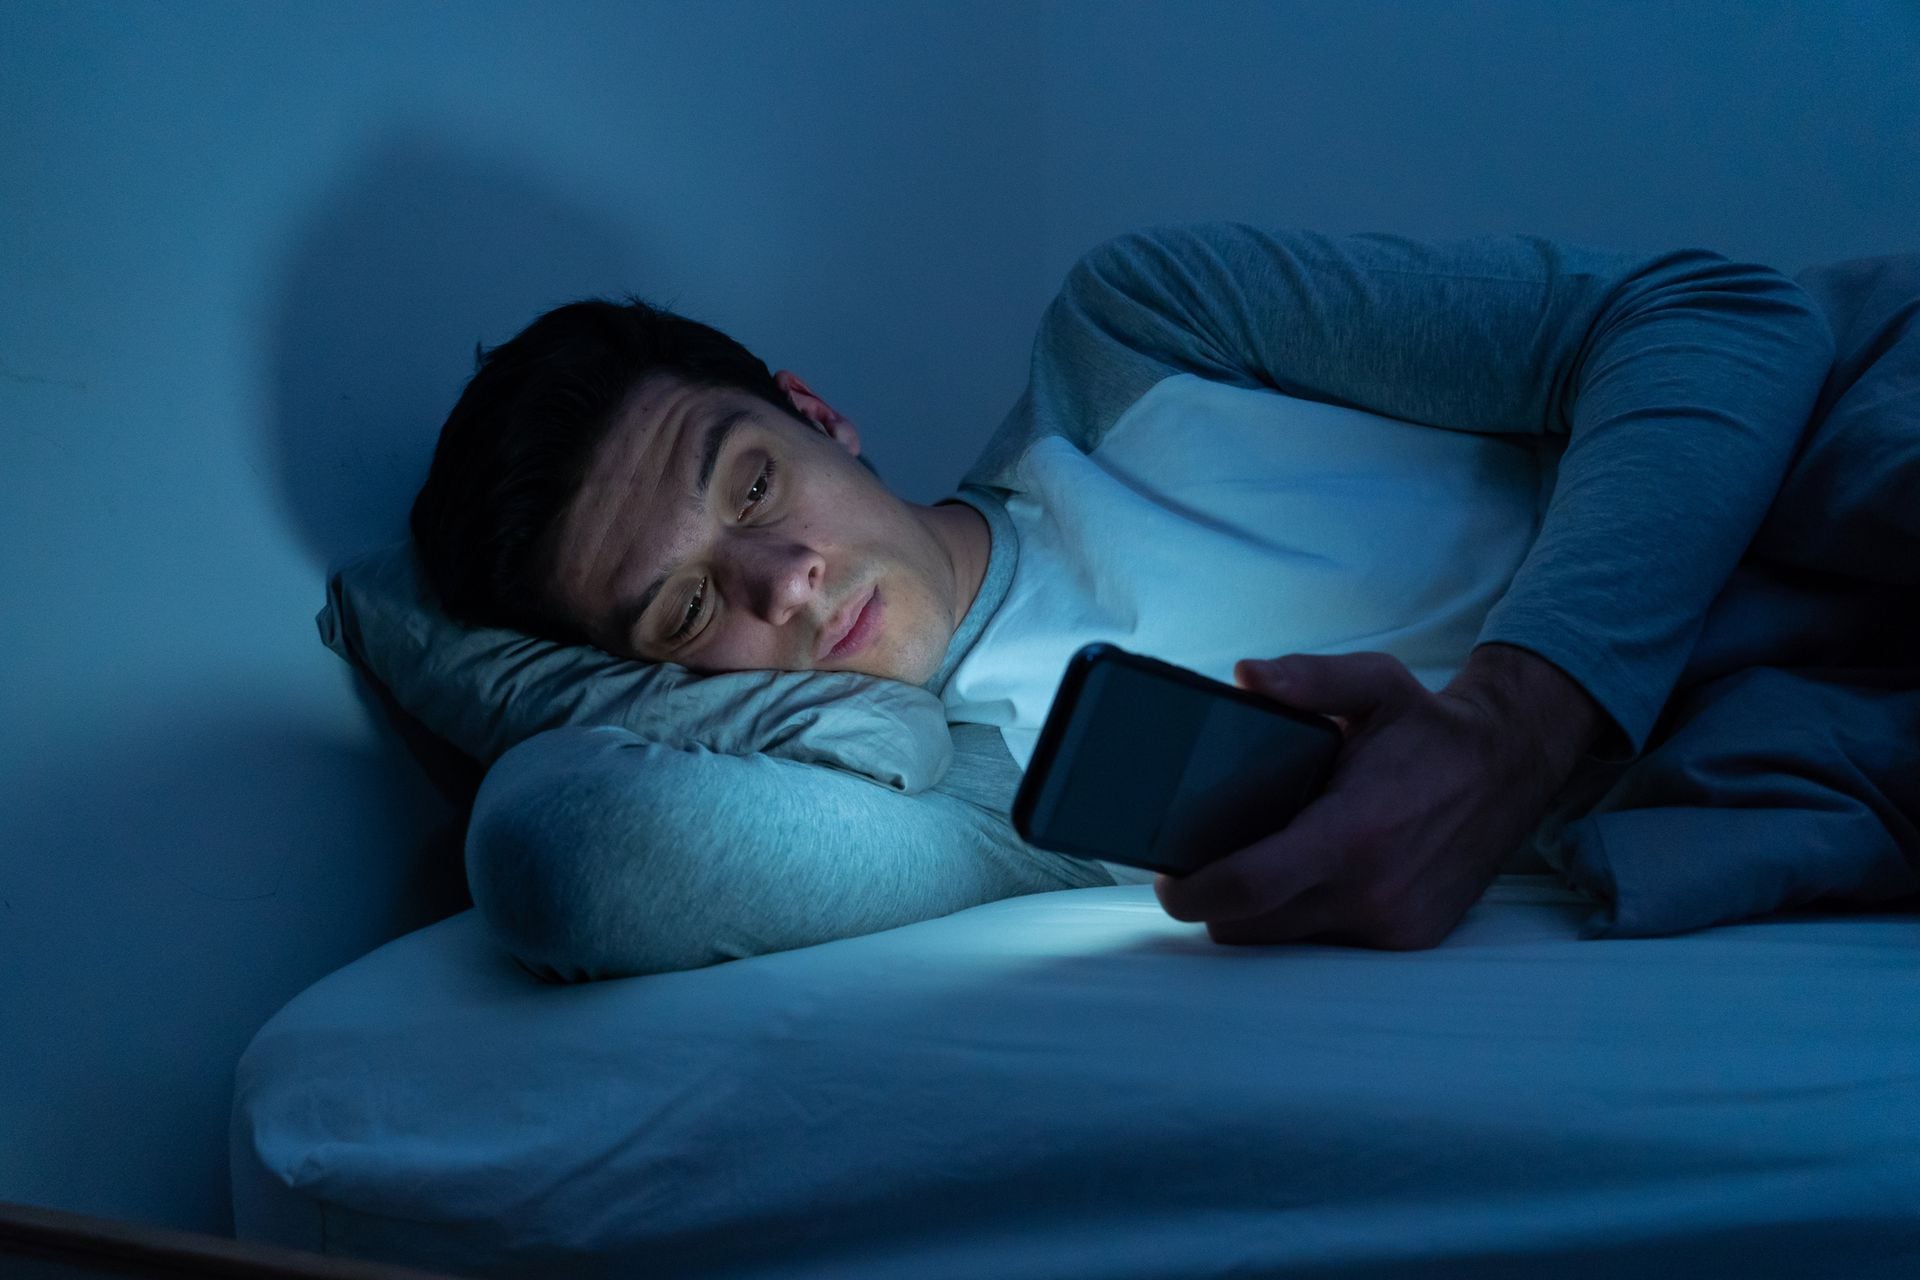 Los expertos aconsejan dejar de lado todos los dispositivos electrónicos a la hora del descanso, pero las preocupaciones muchas veces impiden la desconexión